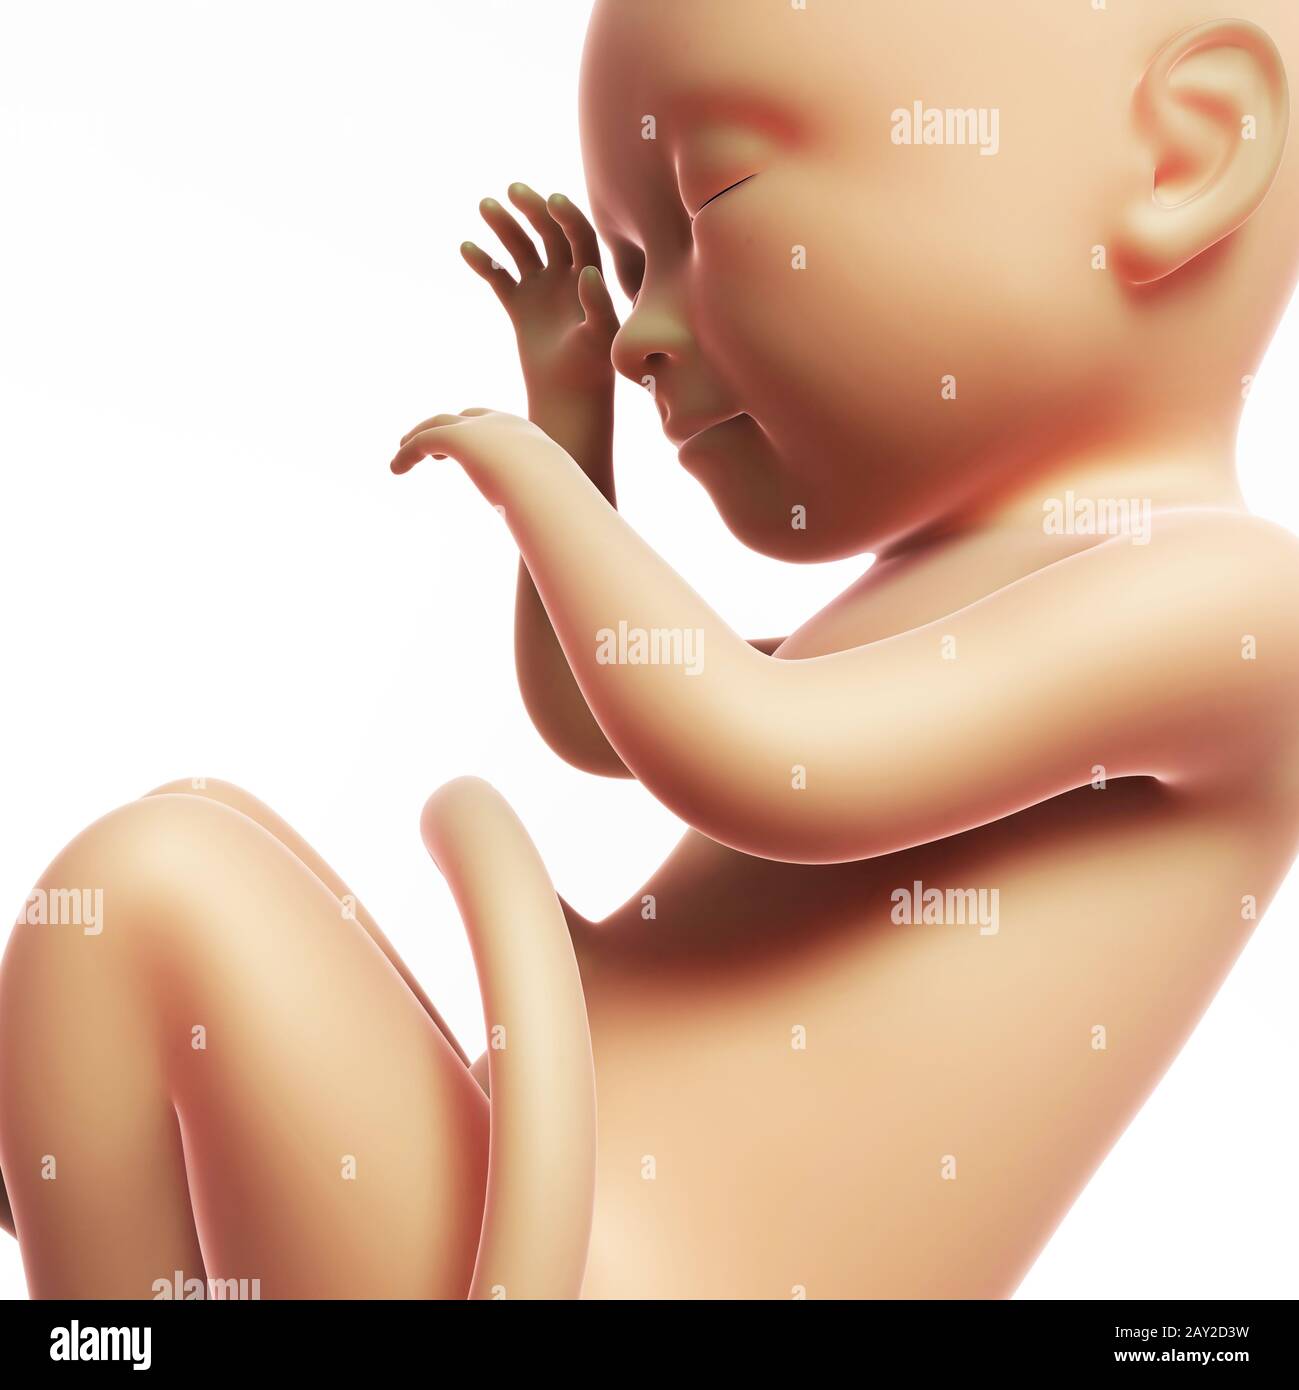 Rendu 3d illustration - fœtus humain 8 mois Banque D'Images